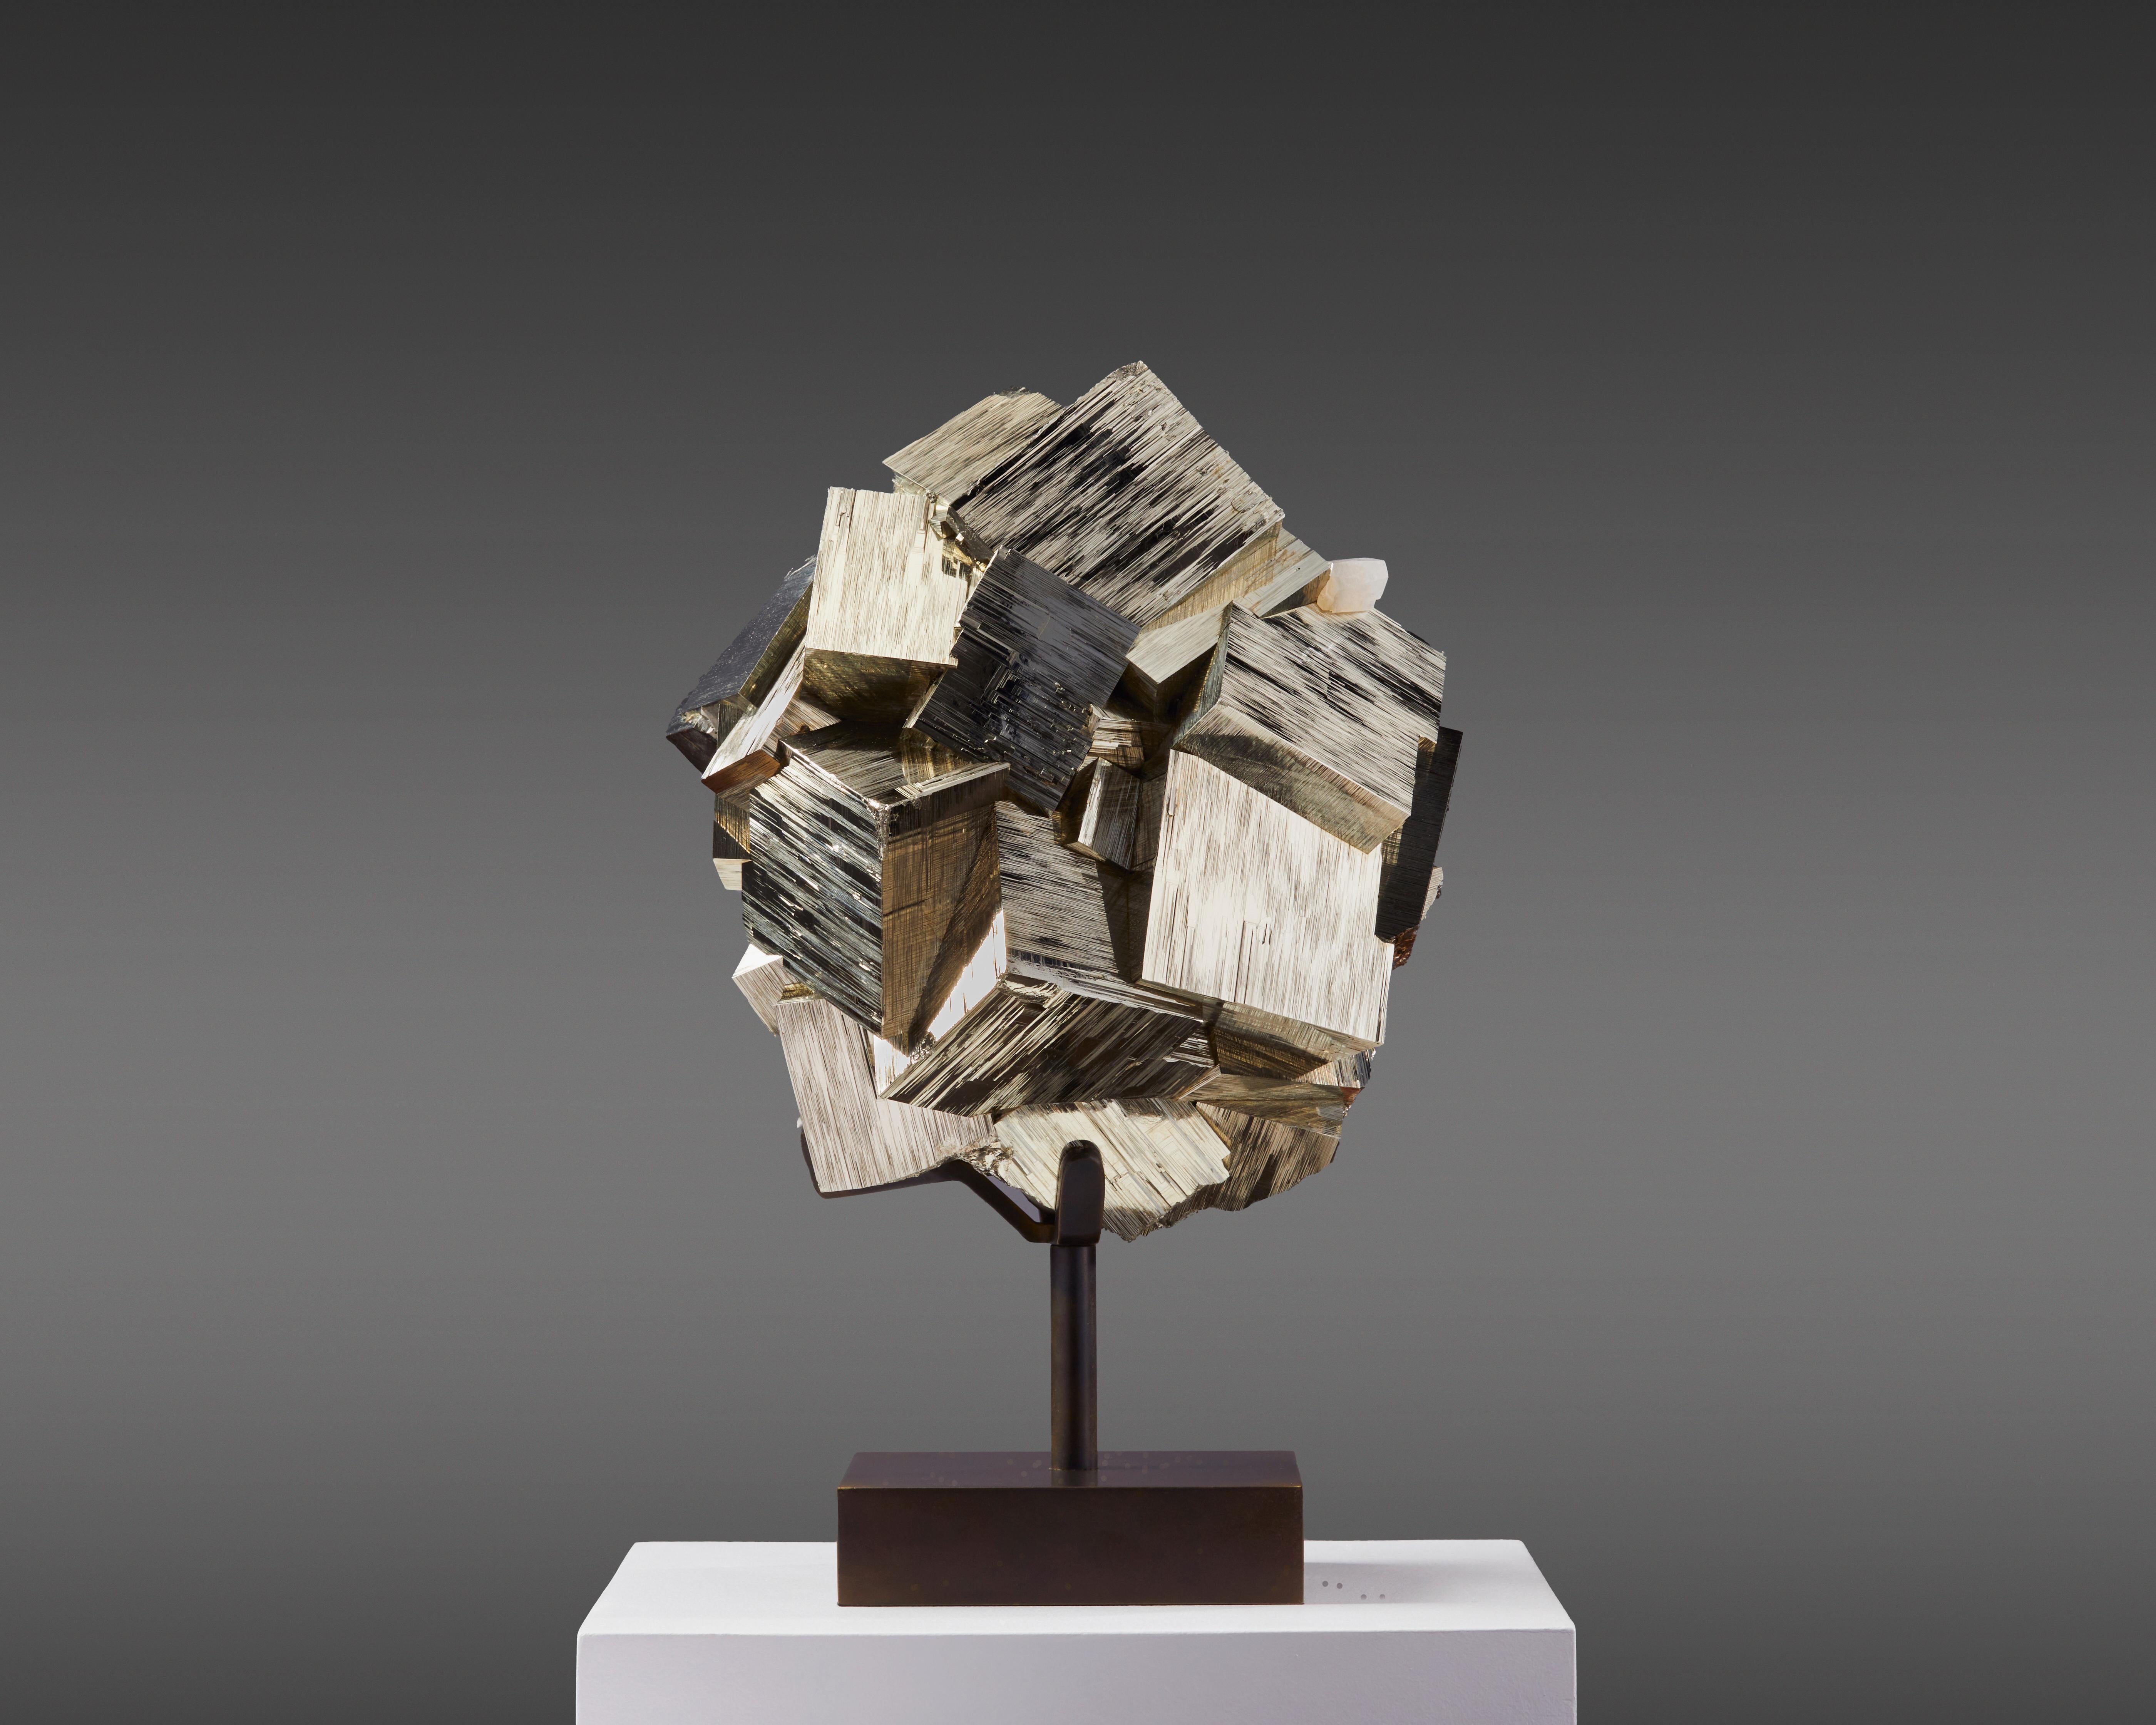 Pièce en pyrite provenant des sols riches en minéraux du Pérou.
est une symphonie d'éclat métallique et de précision géométrique.
Ses cristaux cubiques parfaits sont imbriqués les uns dans les autres dans une présentation captivante,
chacun